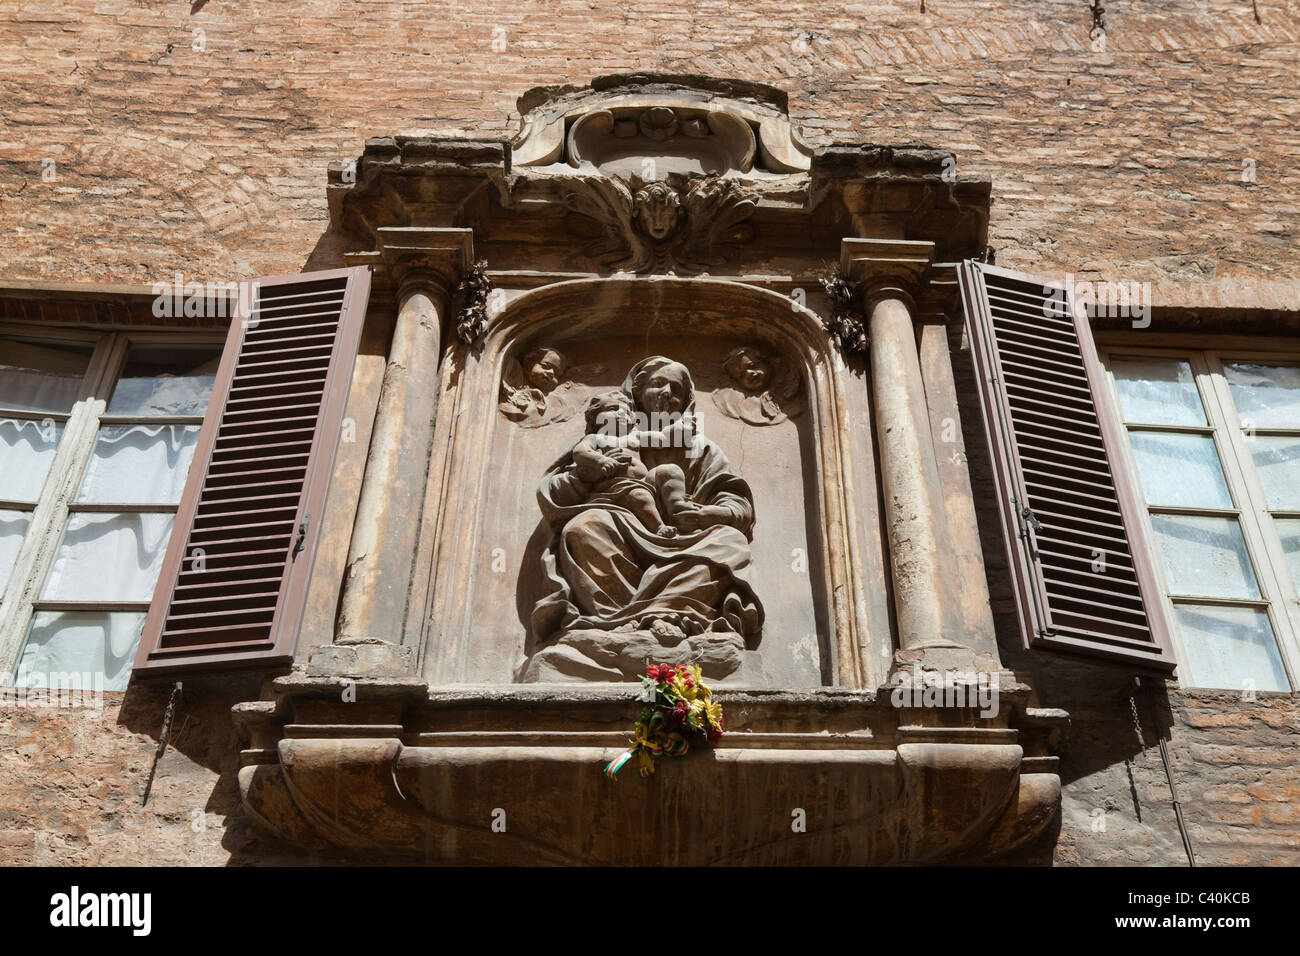 Santa Maria tenendo in braccio Gesù Bambino statua su una casa senese parete. Siena, Toscana, Italia Foto Stock